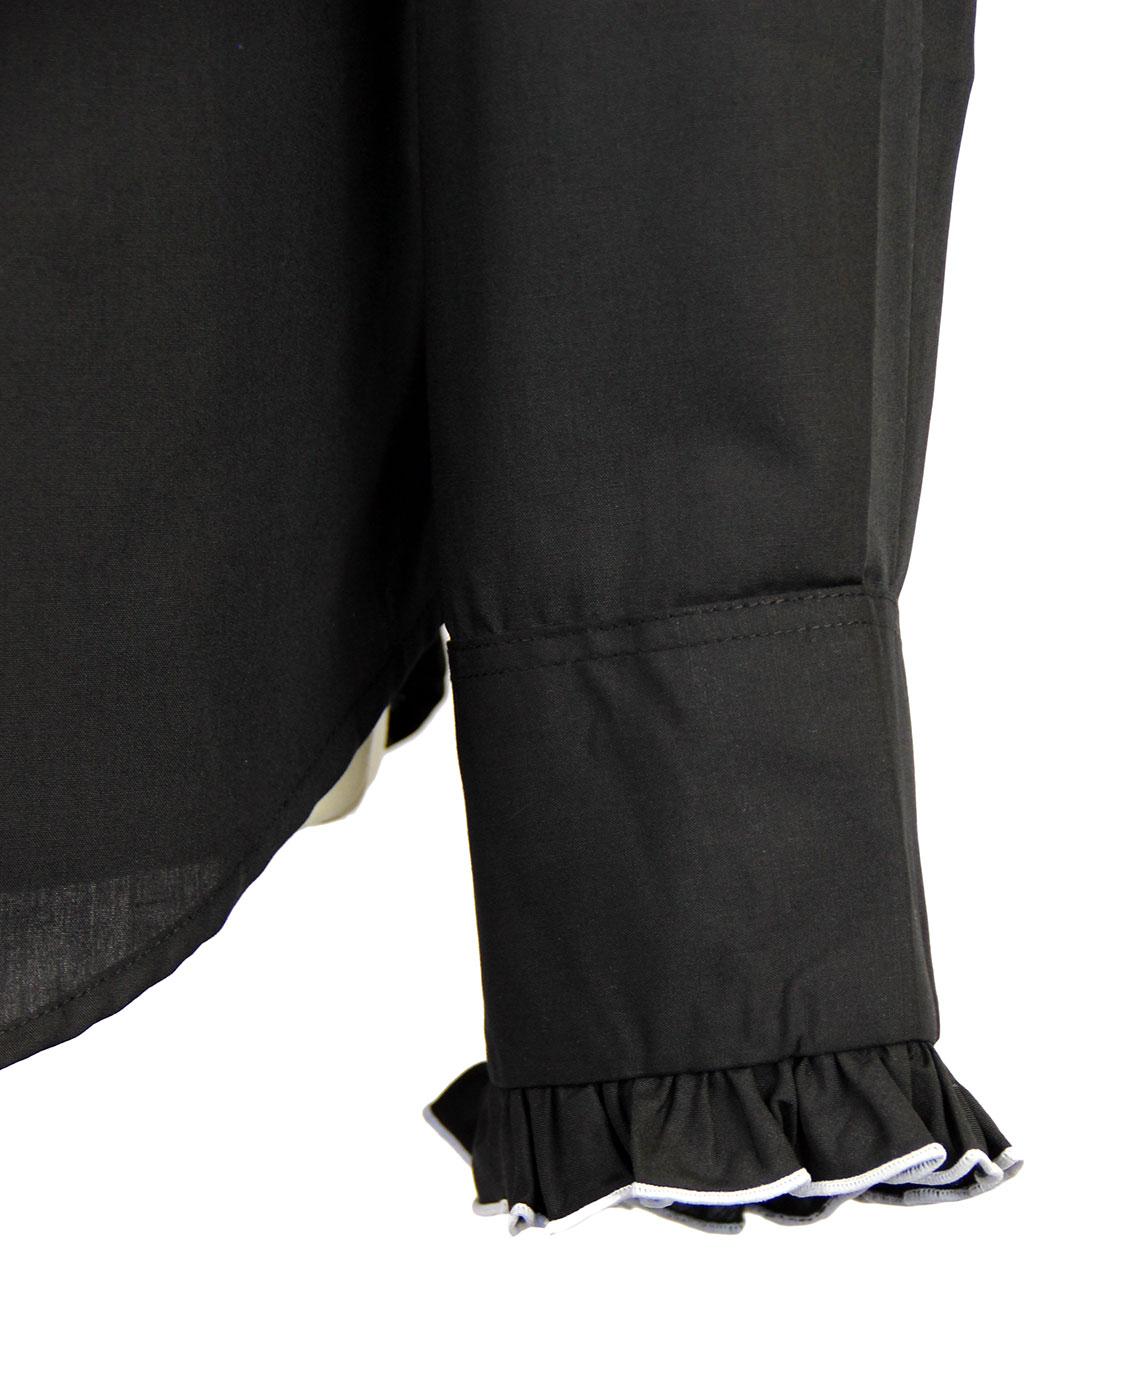 CHENASKI Ruche Frill Retro 70s Vintage Tuxedo Shirt Black